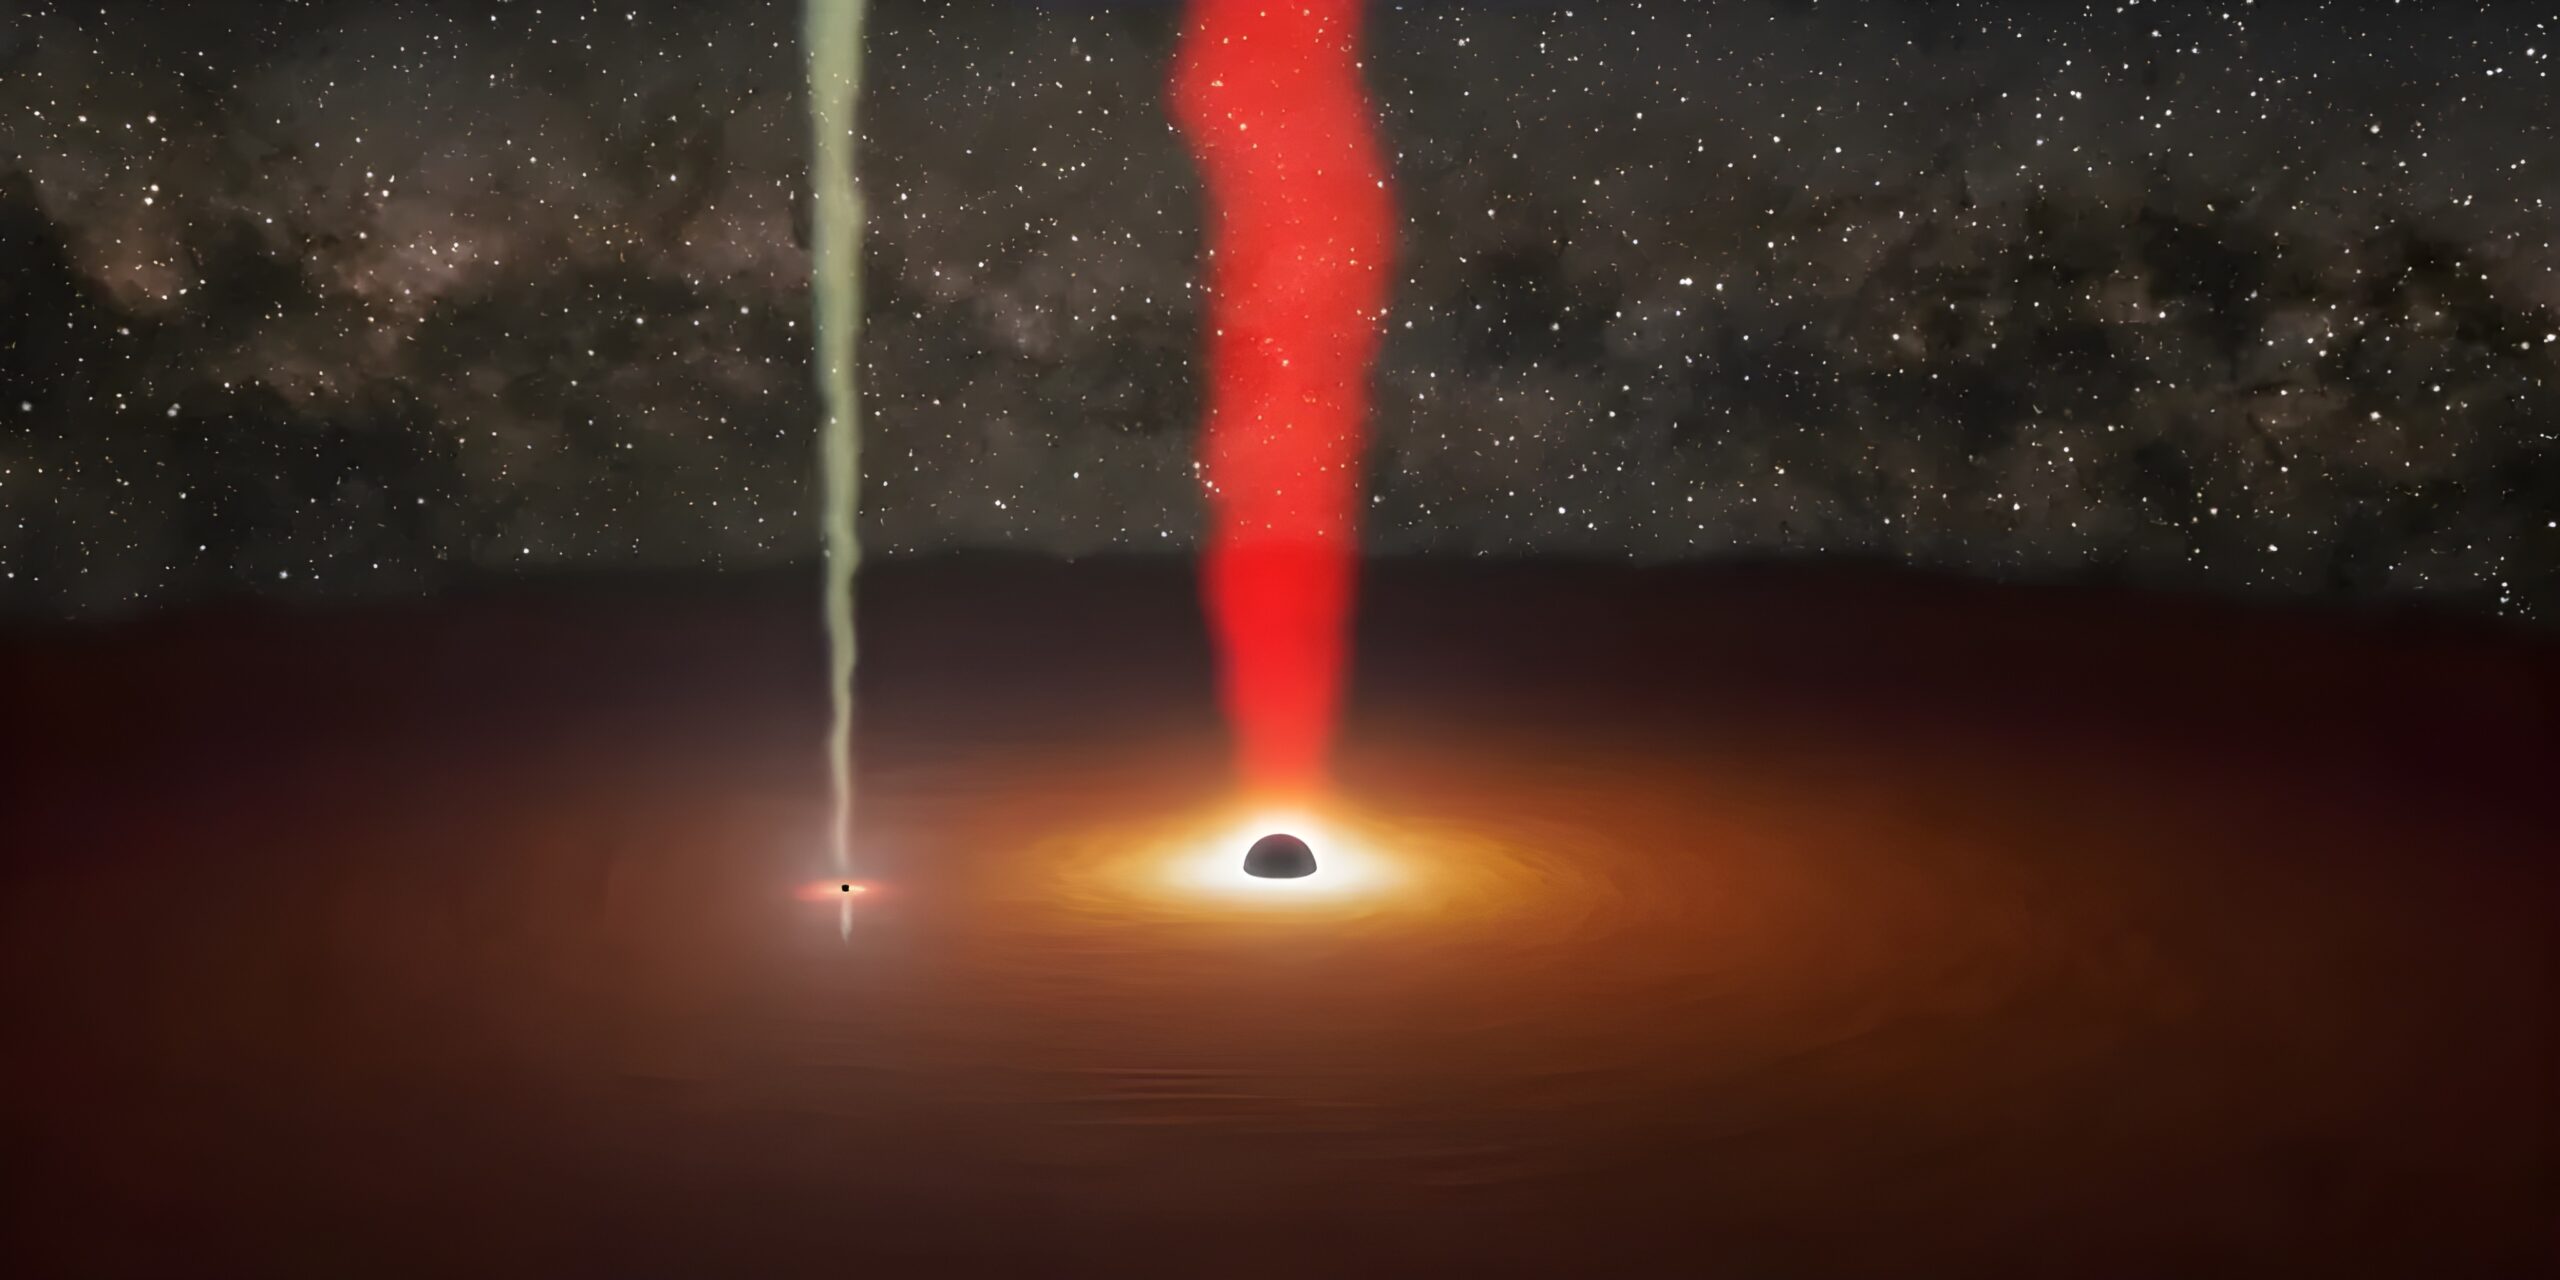 Астрономы впервые наблюдали «затмение» с участием двух сверхмассивных чёрных дыр